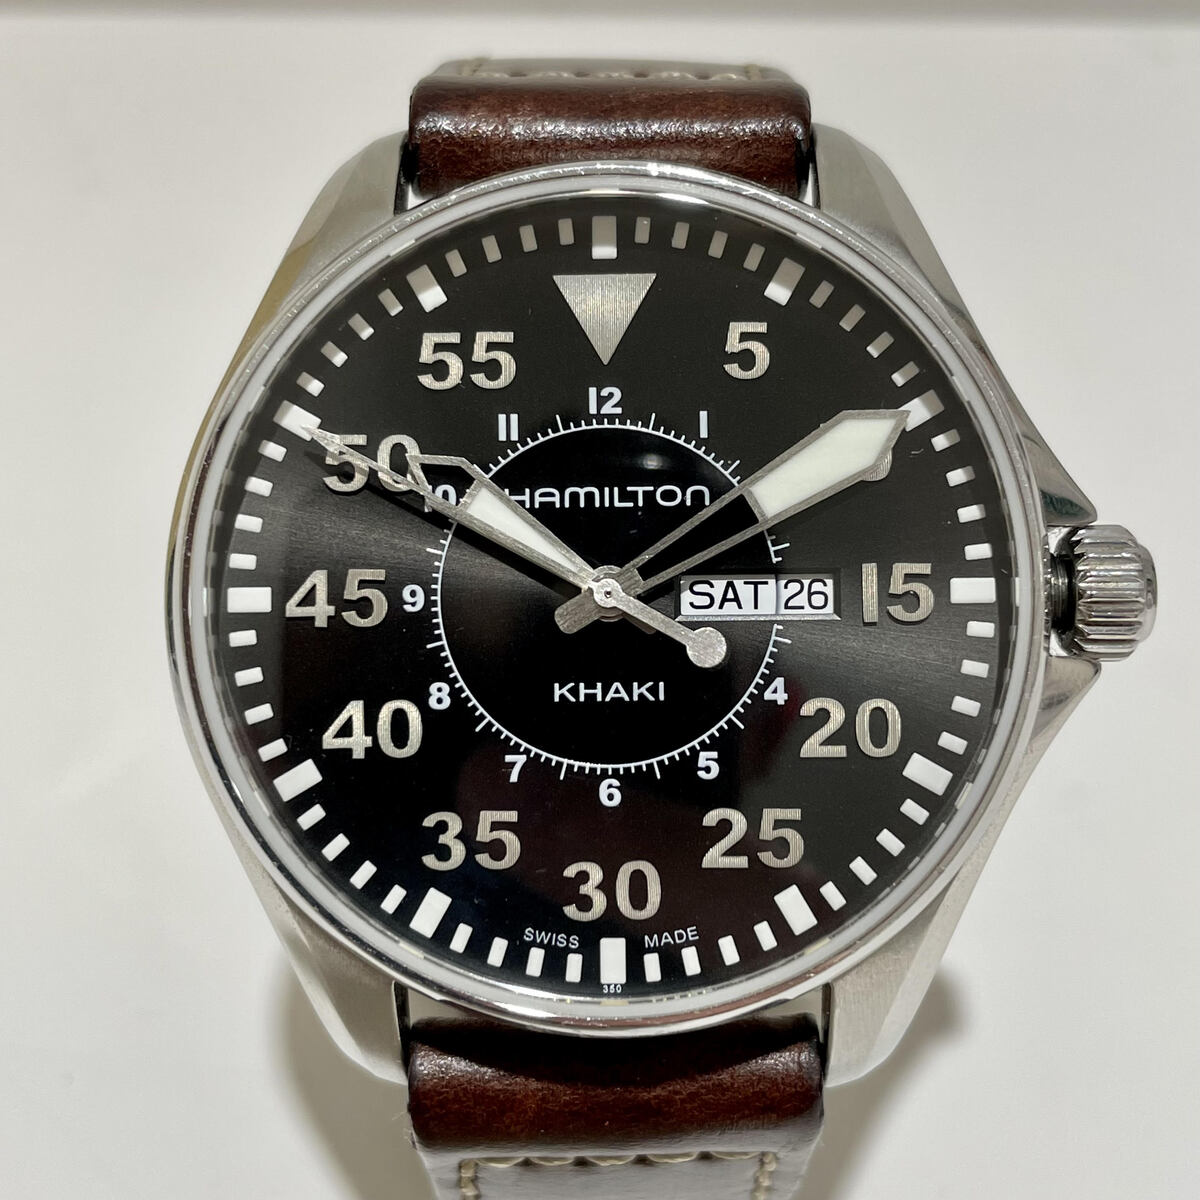 ハミルトンのH646110 カーキアビエーション パイロット デイデイト 黒文字盤 クオーツ腕時計の買取実績です。